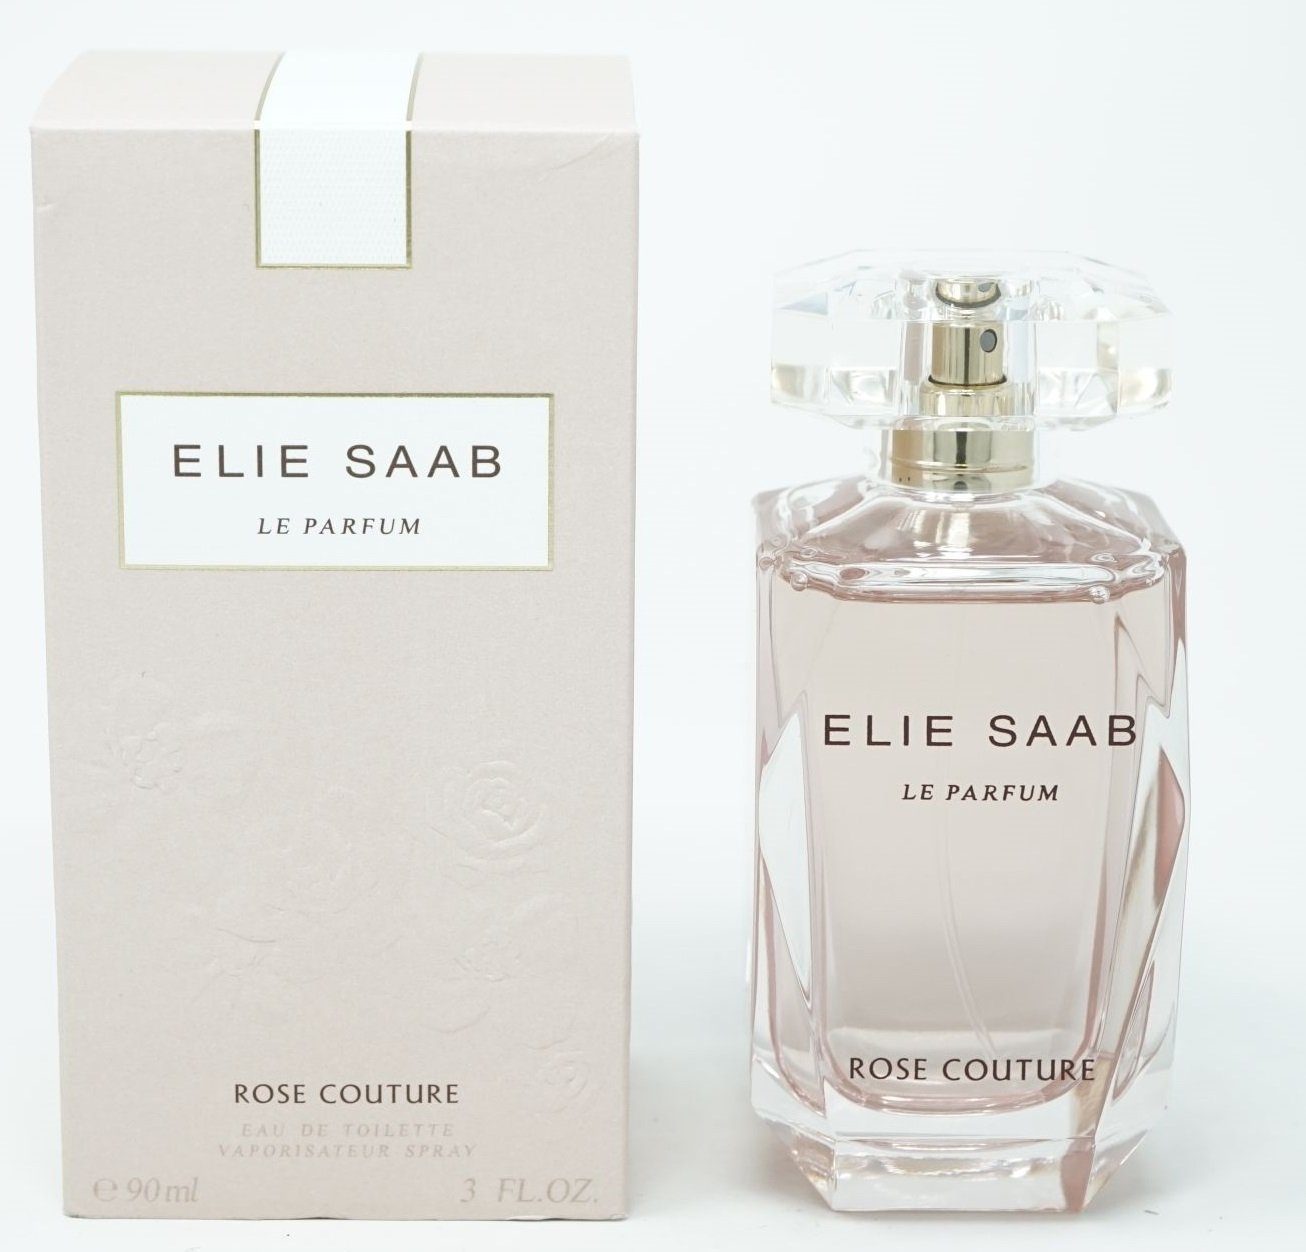 ELIE SAAB Eau de Toilette Elie Saab Le Parfum Rose Couture Eau de Toilette Spray 90ml | Eau de Toilette